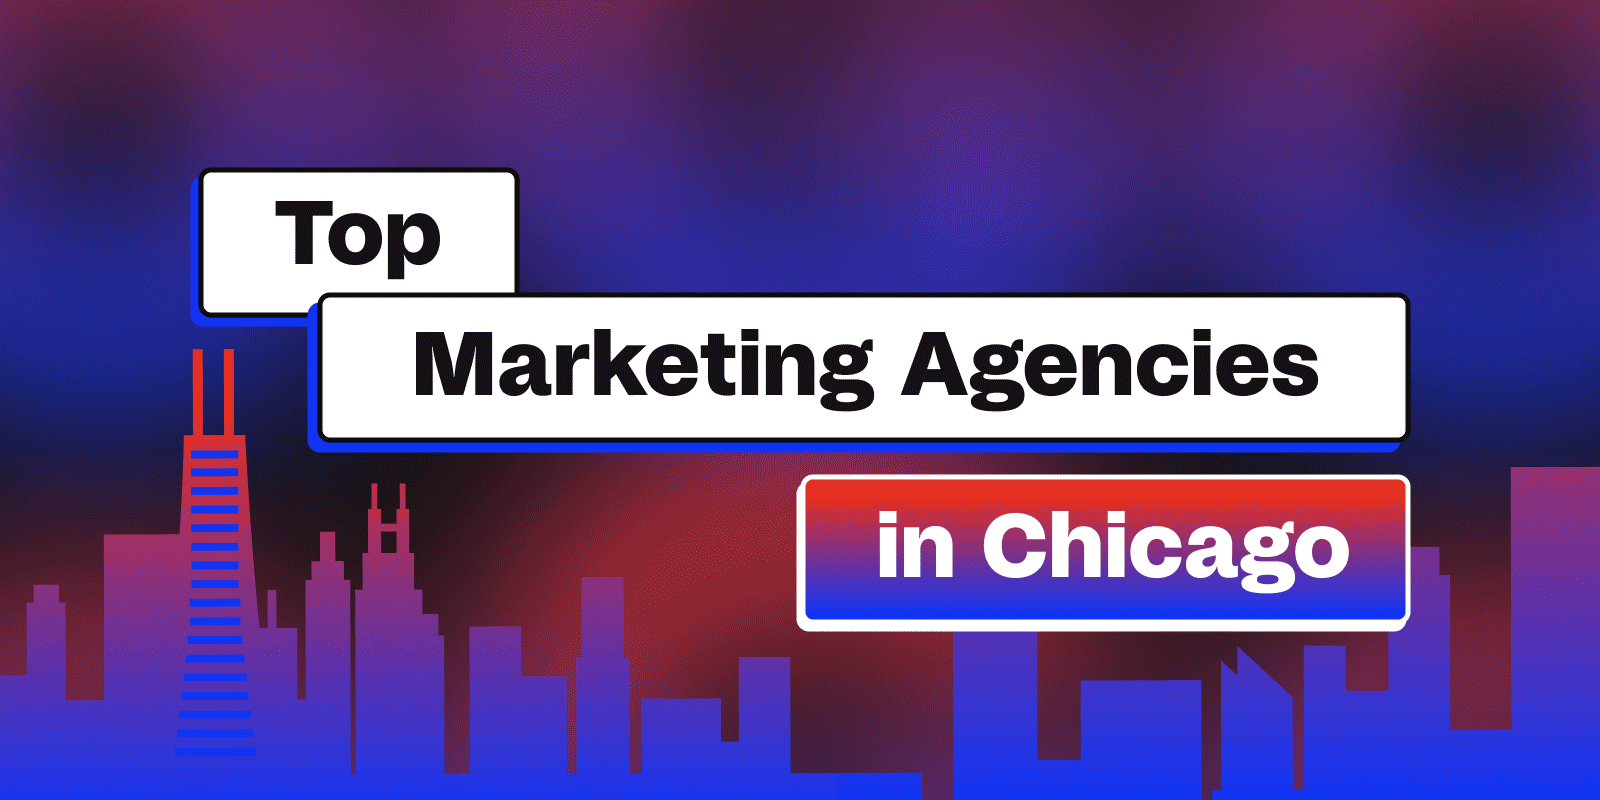 Top Marketing Agencies in Chicago